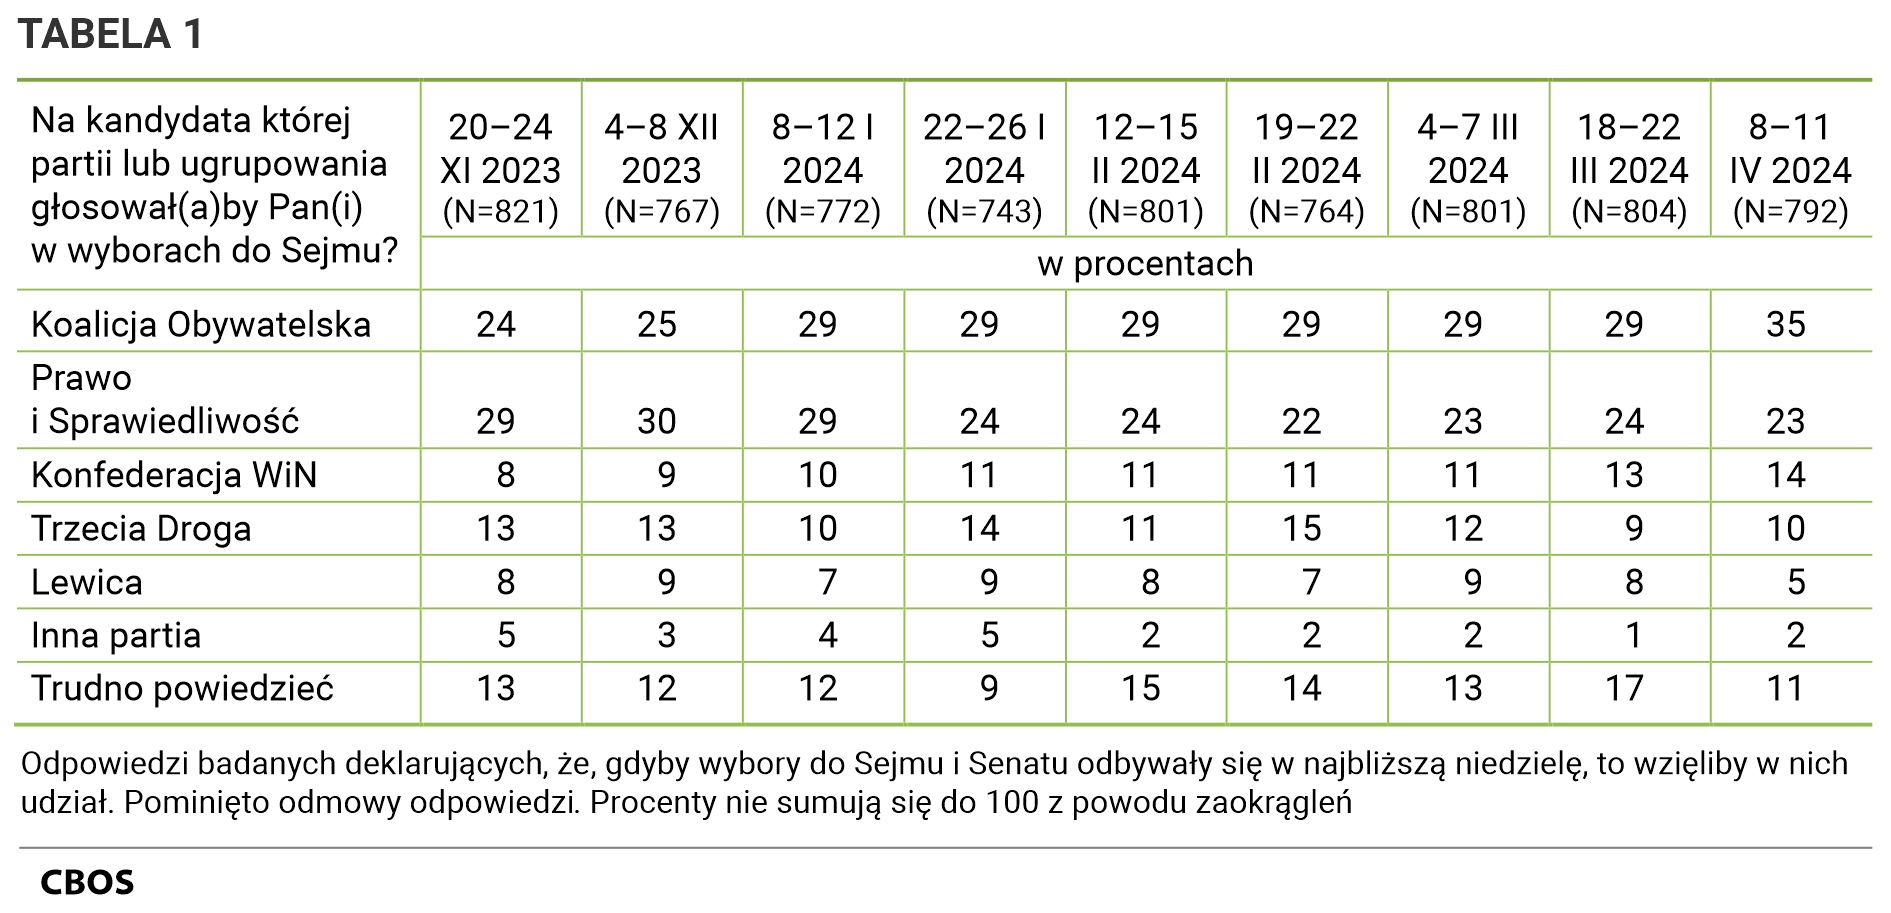 Tabela 1 Na kandydata której partii lub ugrupowania głosowałby Pan (głosowałaby Pani)  w wyborach do Sejmu? Odpowiedzi według terminów badań. Dane w procentach. 20–24 XI 2023 (N=821); Koalicja Obywatelska - 24; Prawo i Sprawiedliwość - 29; Konfederacja Wolność I Niepodległość - 8; Trzecia Droga - 13; Lewica - 8; Inna partia - 5; Trudno powiedzieć - 13;  - 4–8 XII 2023 (N=767); Koalicja Obywatelska - 25; Prawo i Sprawiedliwość - 30; Konfederacja Wolność I Niepodległość - 9; Trzecia Droga - 13; Lewica - 9; Inna partia - 3; Trudno powiedzieć - 12;  - 8–12 I 2024 (N=772); Koalicja Obywatelska - 29; Prawo i Sprawiedliwość - 29; Konfederacja Wolność I Niepodległość - 10; Trzecia Droga - 10; Lewica - 7; Inna partia - 4; Trudno powiedzieć - 12;  - 22–26 I 2024 (N=743); Koalicja Obywatelska - 29; Prawo i Sprawiedliwość - 24; Konfederacja Wolność I Niepodległość - 11; Trzecia Droga - 14; Lewica - 9; Inna partia - 5; Trudno powiedzieć - 9;  - 12–15 II 2024 (N=801); Koalicja Obywatelska - 29; Prawo i Sprawiedliwość - 24; Konfederacja Wolność I Niepodległość - 11; Trzecia Droga - 11; Lewica - 8; Inna partia - 2; Trudno powiedzieć - 15;  - 19–22 II 2024 (N=764); Koalicja Obywatelska - 29; Prawo i Sprawiedliwość - 22; Konfederacja Wolność I Niepodległość - 11; Trzecia Droga - 15; Lewica - 7; Inna partia - 2; Trudno powiedzieć - 14;  - 4–7 III 2024 (N=801); Koalicja Obywatelska - 29; Prawo i Sprawiedliwość - 23; Konfederacja Wolność I Niepodległość - 11; Trzecia Droga - 12; Lewica - 9; Inna partia - 2; Trudno powiedzieć - 13;  - 18–22 III 2024 (N=804); Koalicja Obywatelska - 29; Prawo i Sprawiedliwość - 24; Konfederacja Wolność I Niepodległość - 13; Trzecia Droga - 9; Lewica - 8; Inna partia - 1; Trudno powiedzieć - 17;  - 8–11 IV 2024 (N=792); Koalicja Obywatelska - 35; Prawo i Sprawiedliwość - 23; Konfederacja Wolność I Niepodległość - 14; Trzecia Droga - 10; Lewica - 5; Inna partia - 2; Trudno powiedzieć - 11